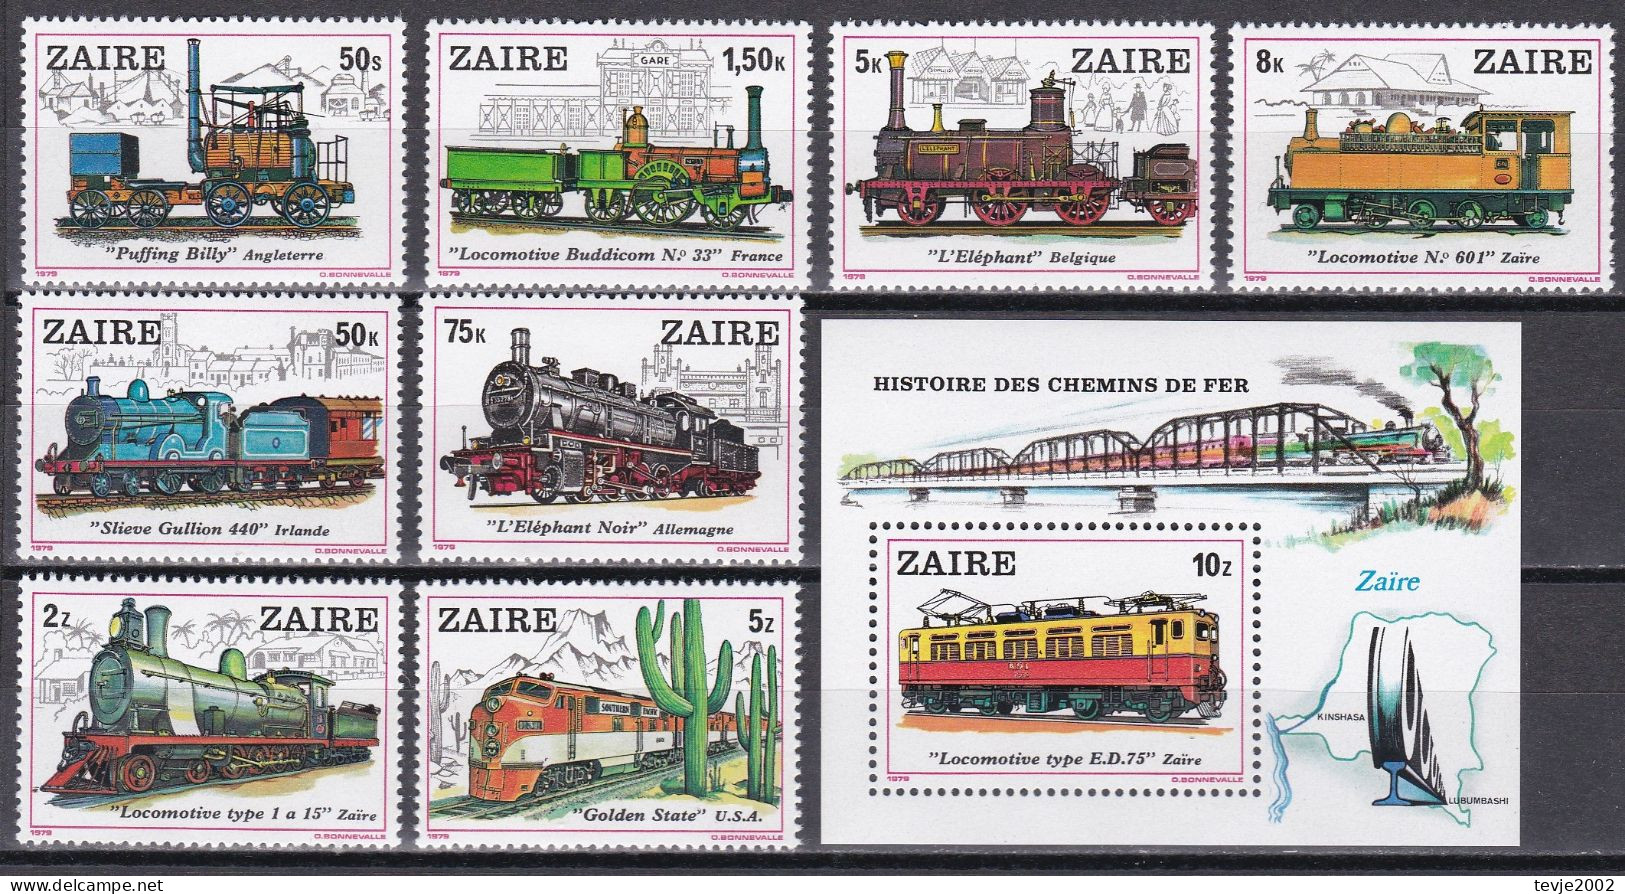 Kongo Zaire 1980 - Mi.Nr. 622 - 629 + Block 31 - Postfrisch MNH - Eisenbahnen Railways Lokomotiven Locomotives - Eisenbahnen